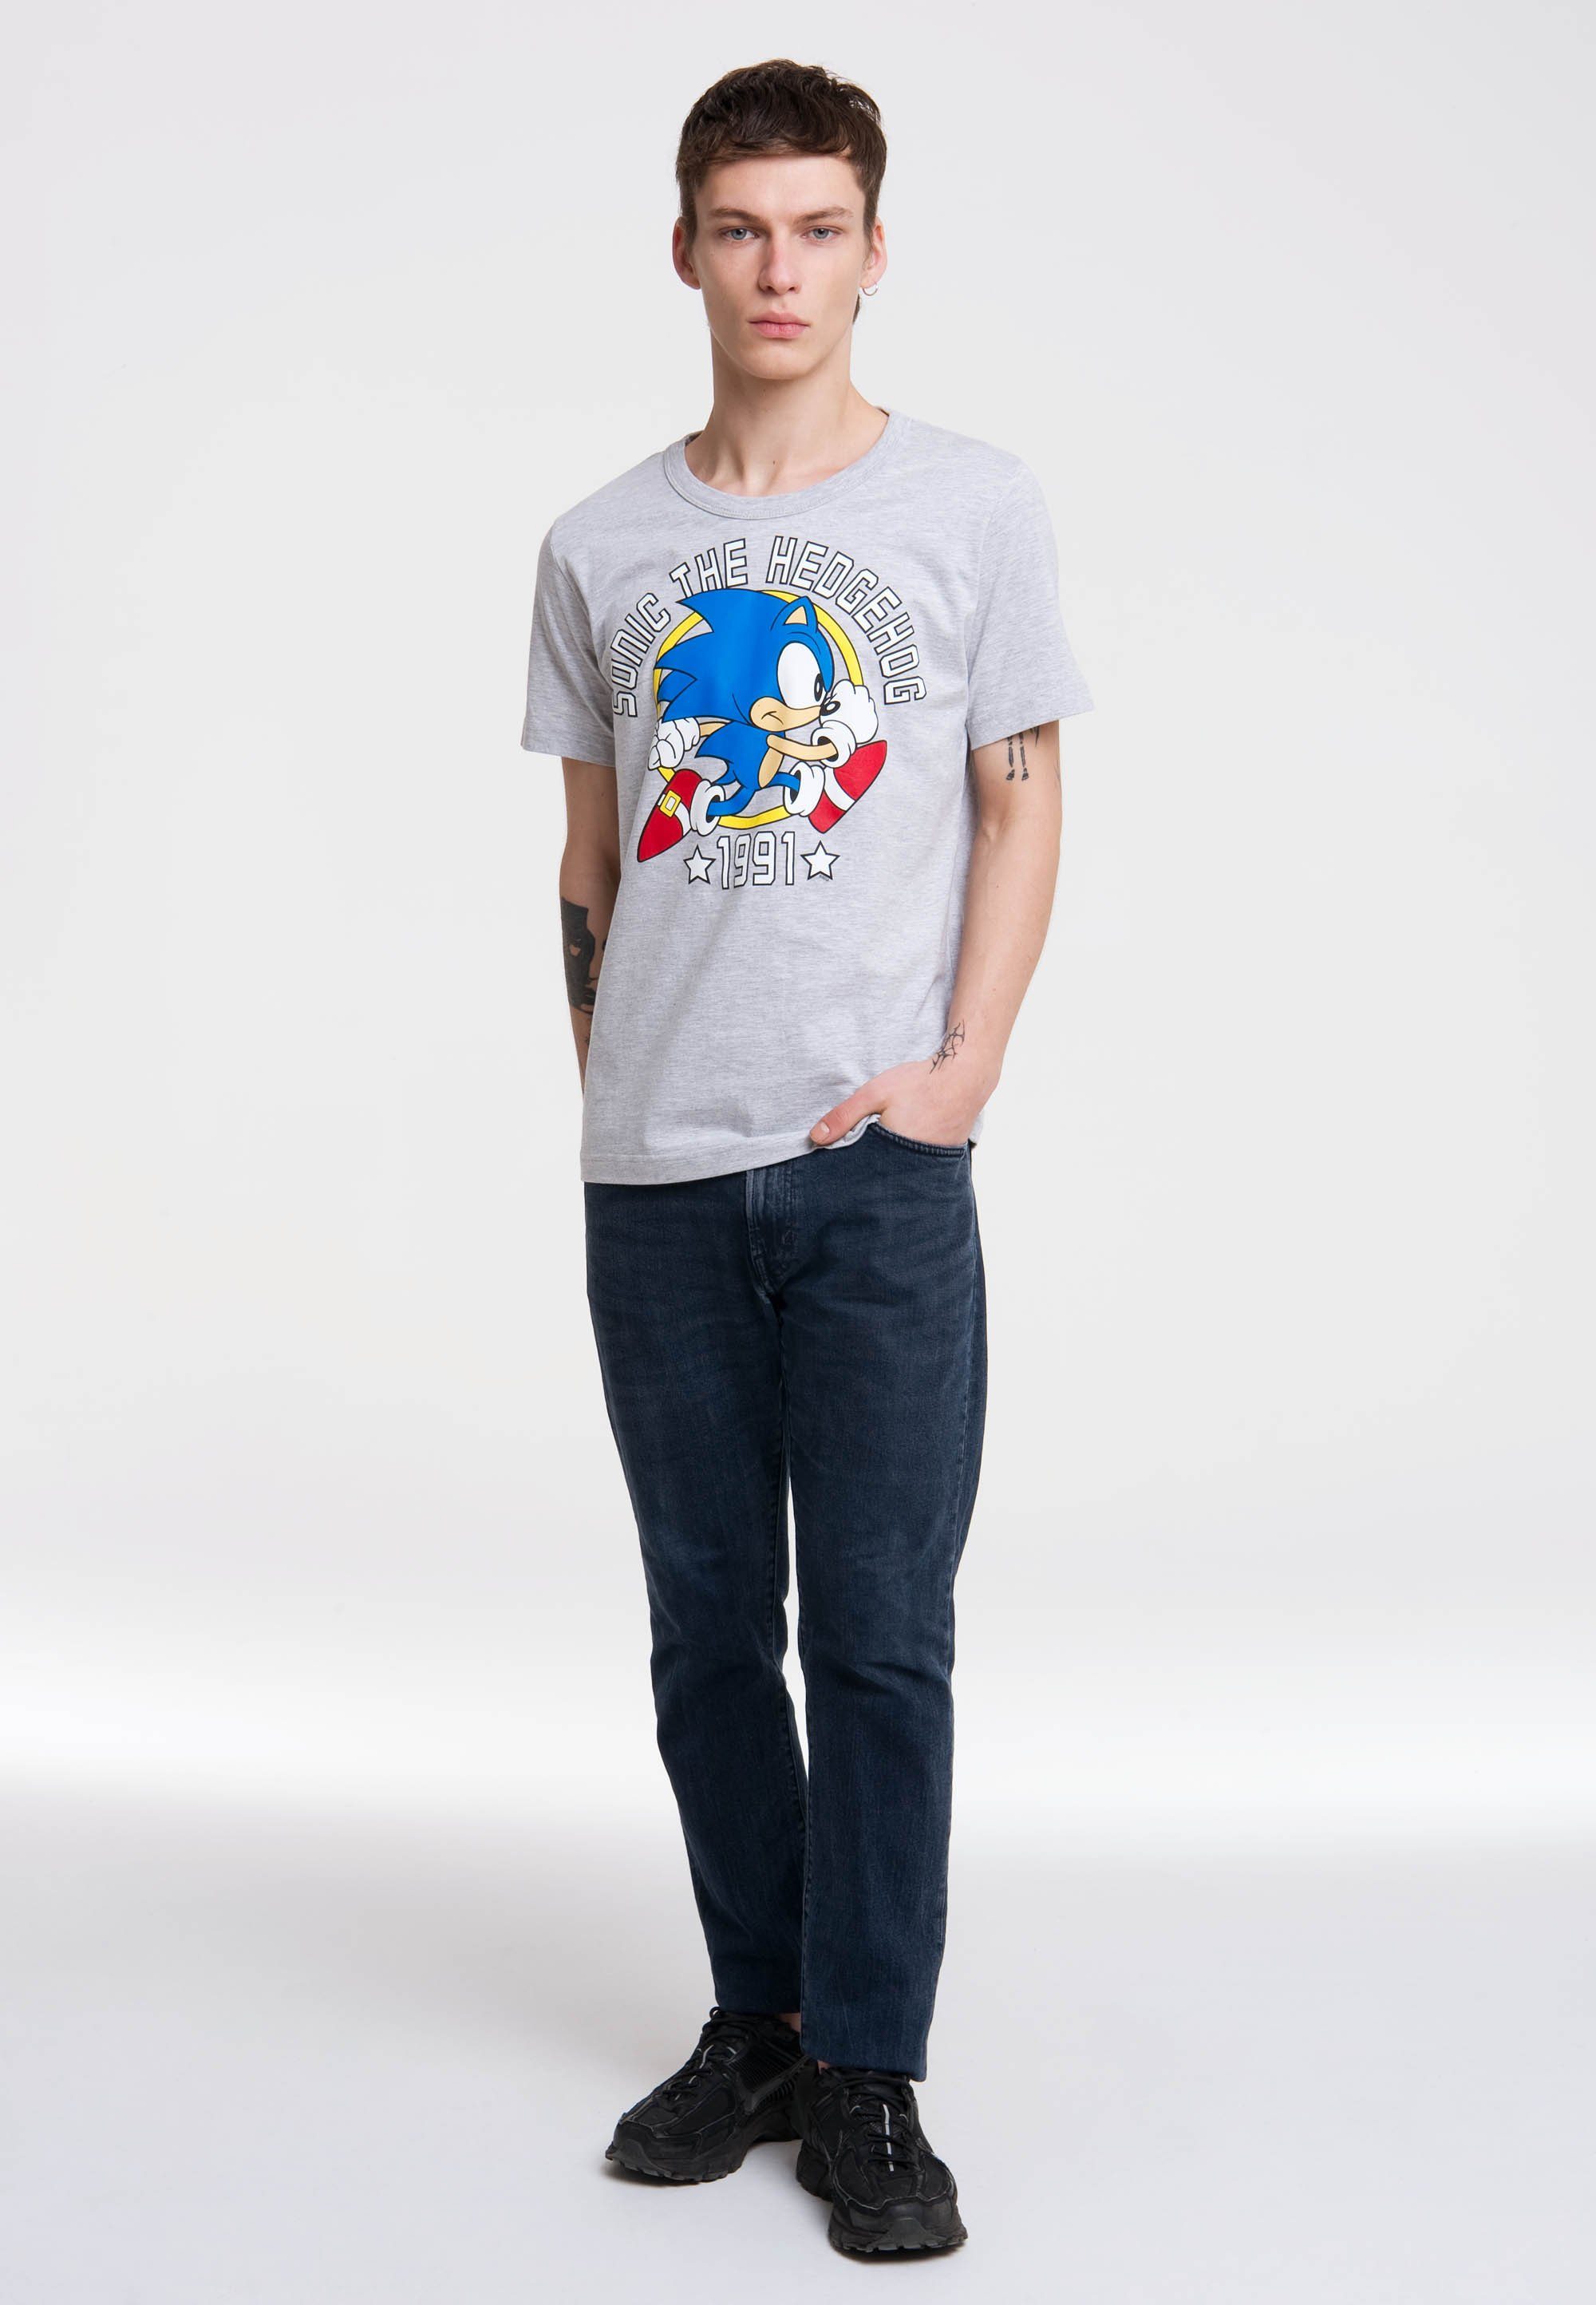 LOGOSHIRT T-Shirt Sonic the Hedgehog 1991 mit Retro-Print